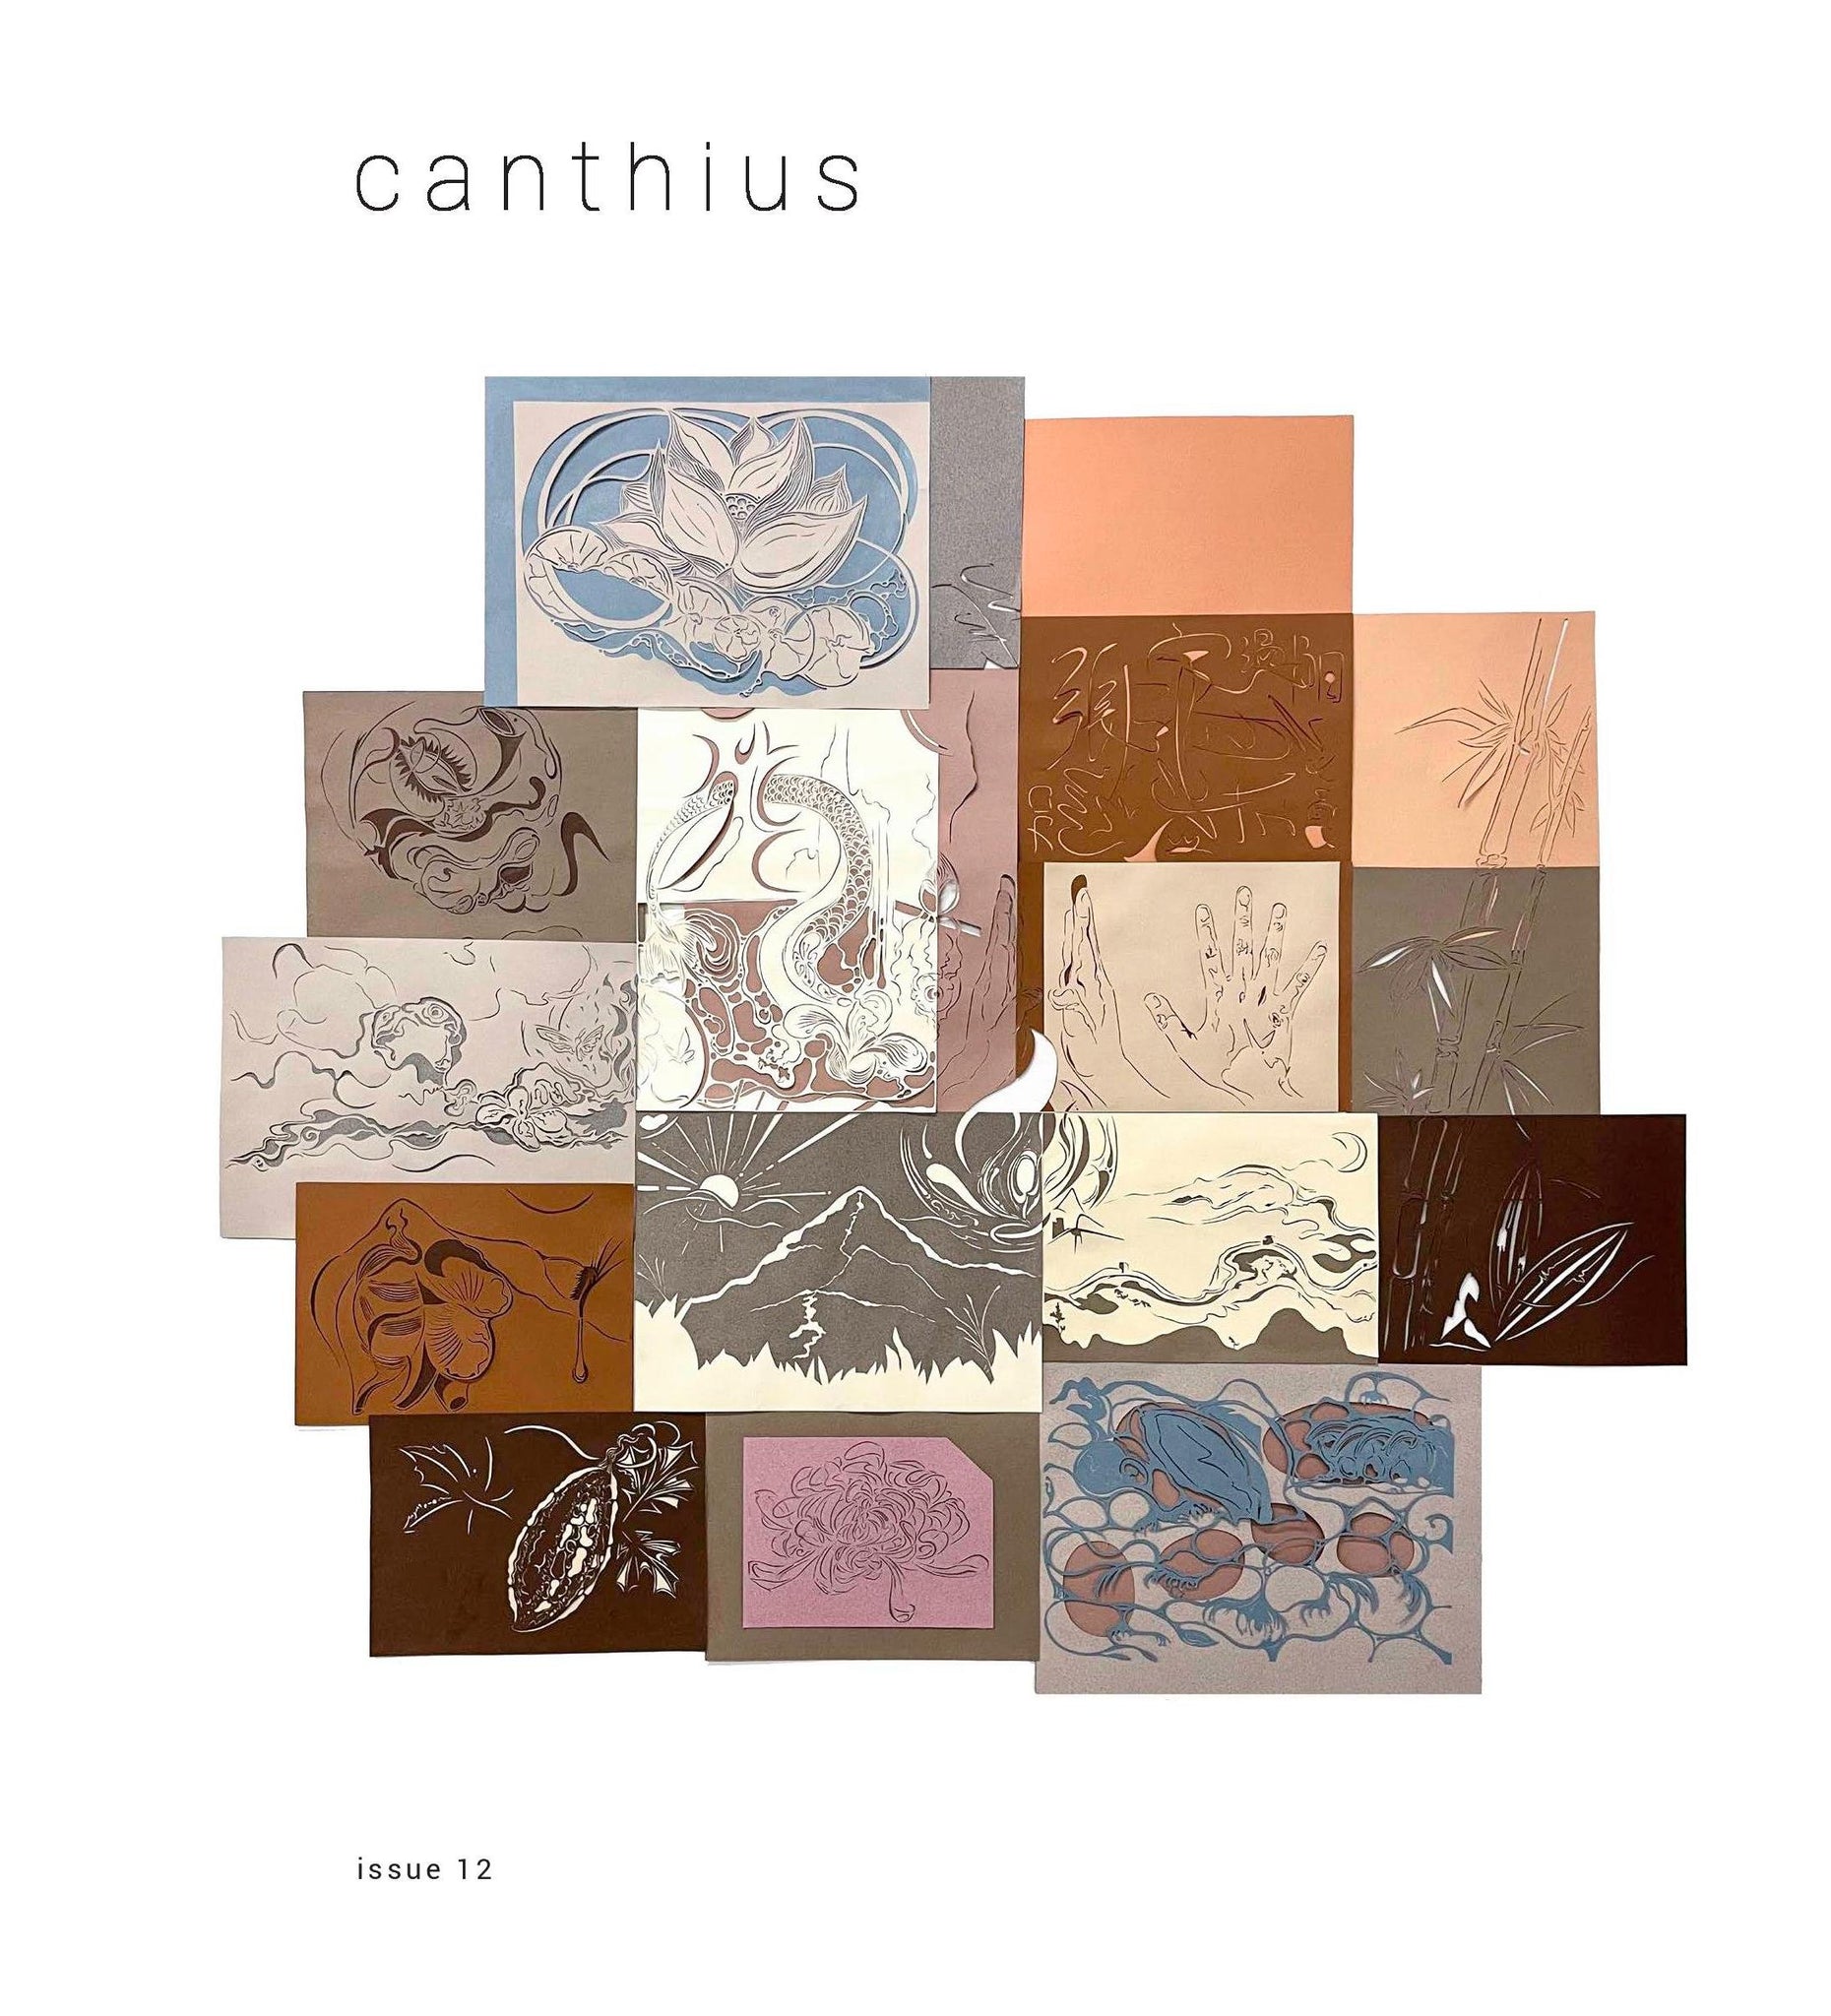 Canthius #12